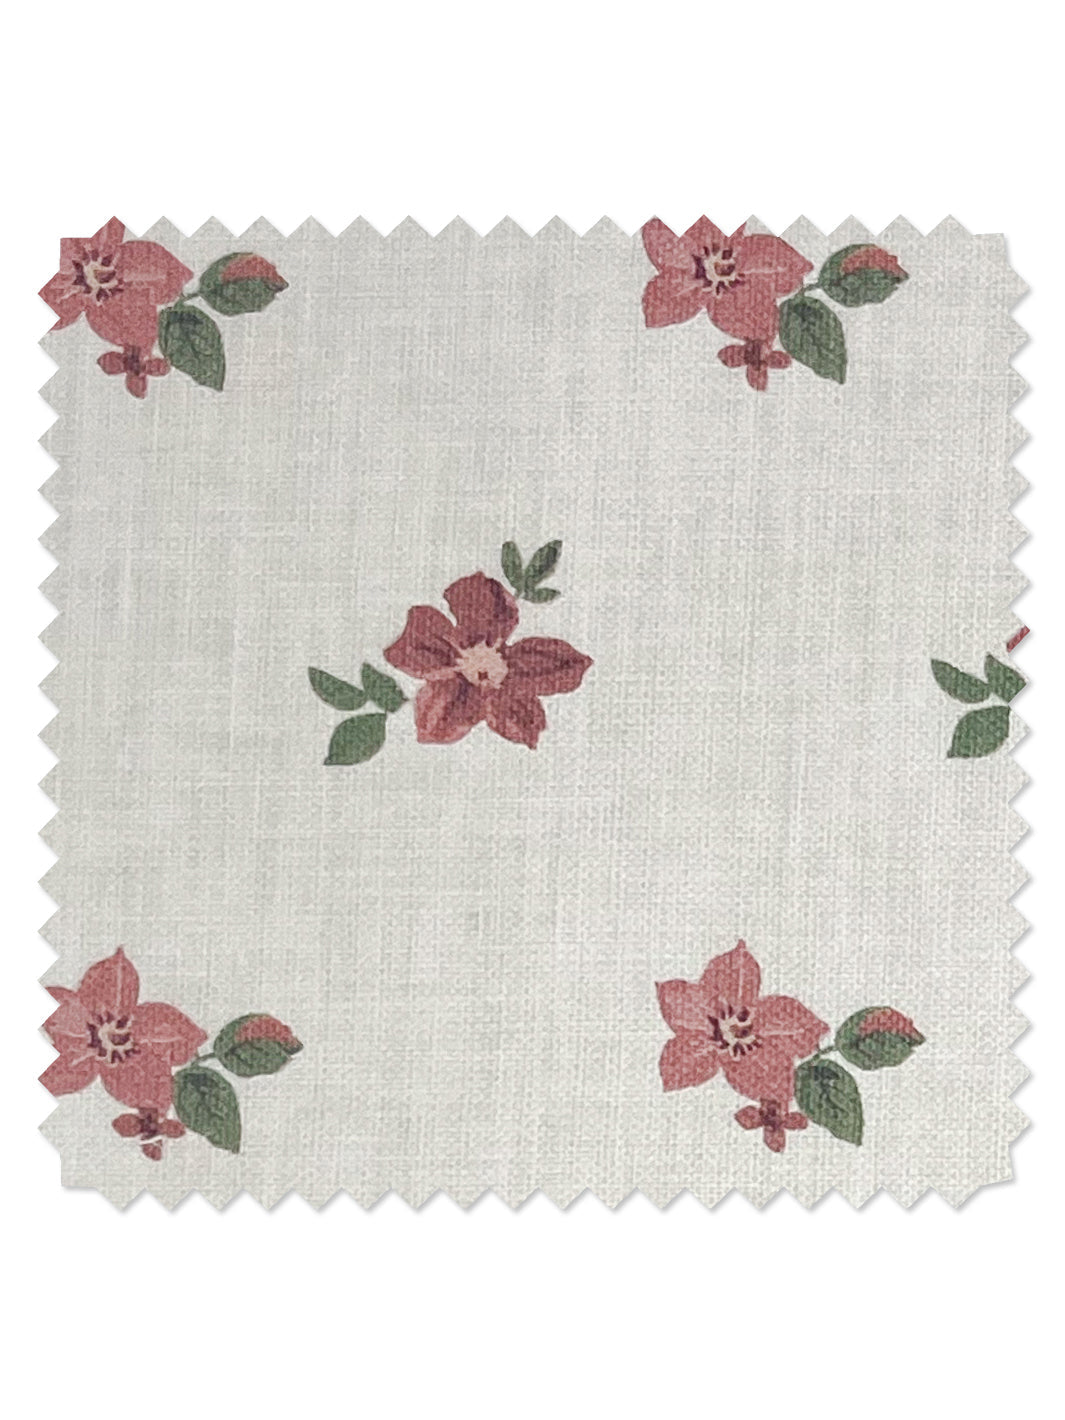 &#39;Anna Floral&#39; Linen Fabric - Pink Green